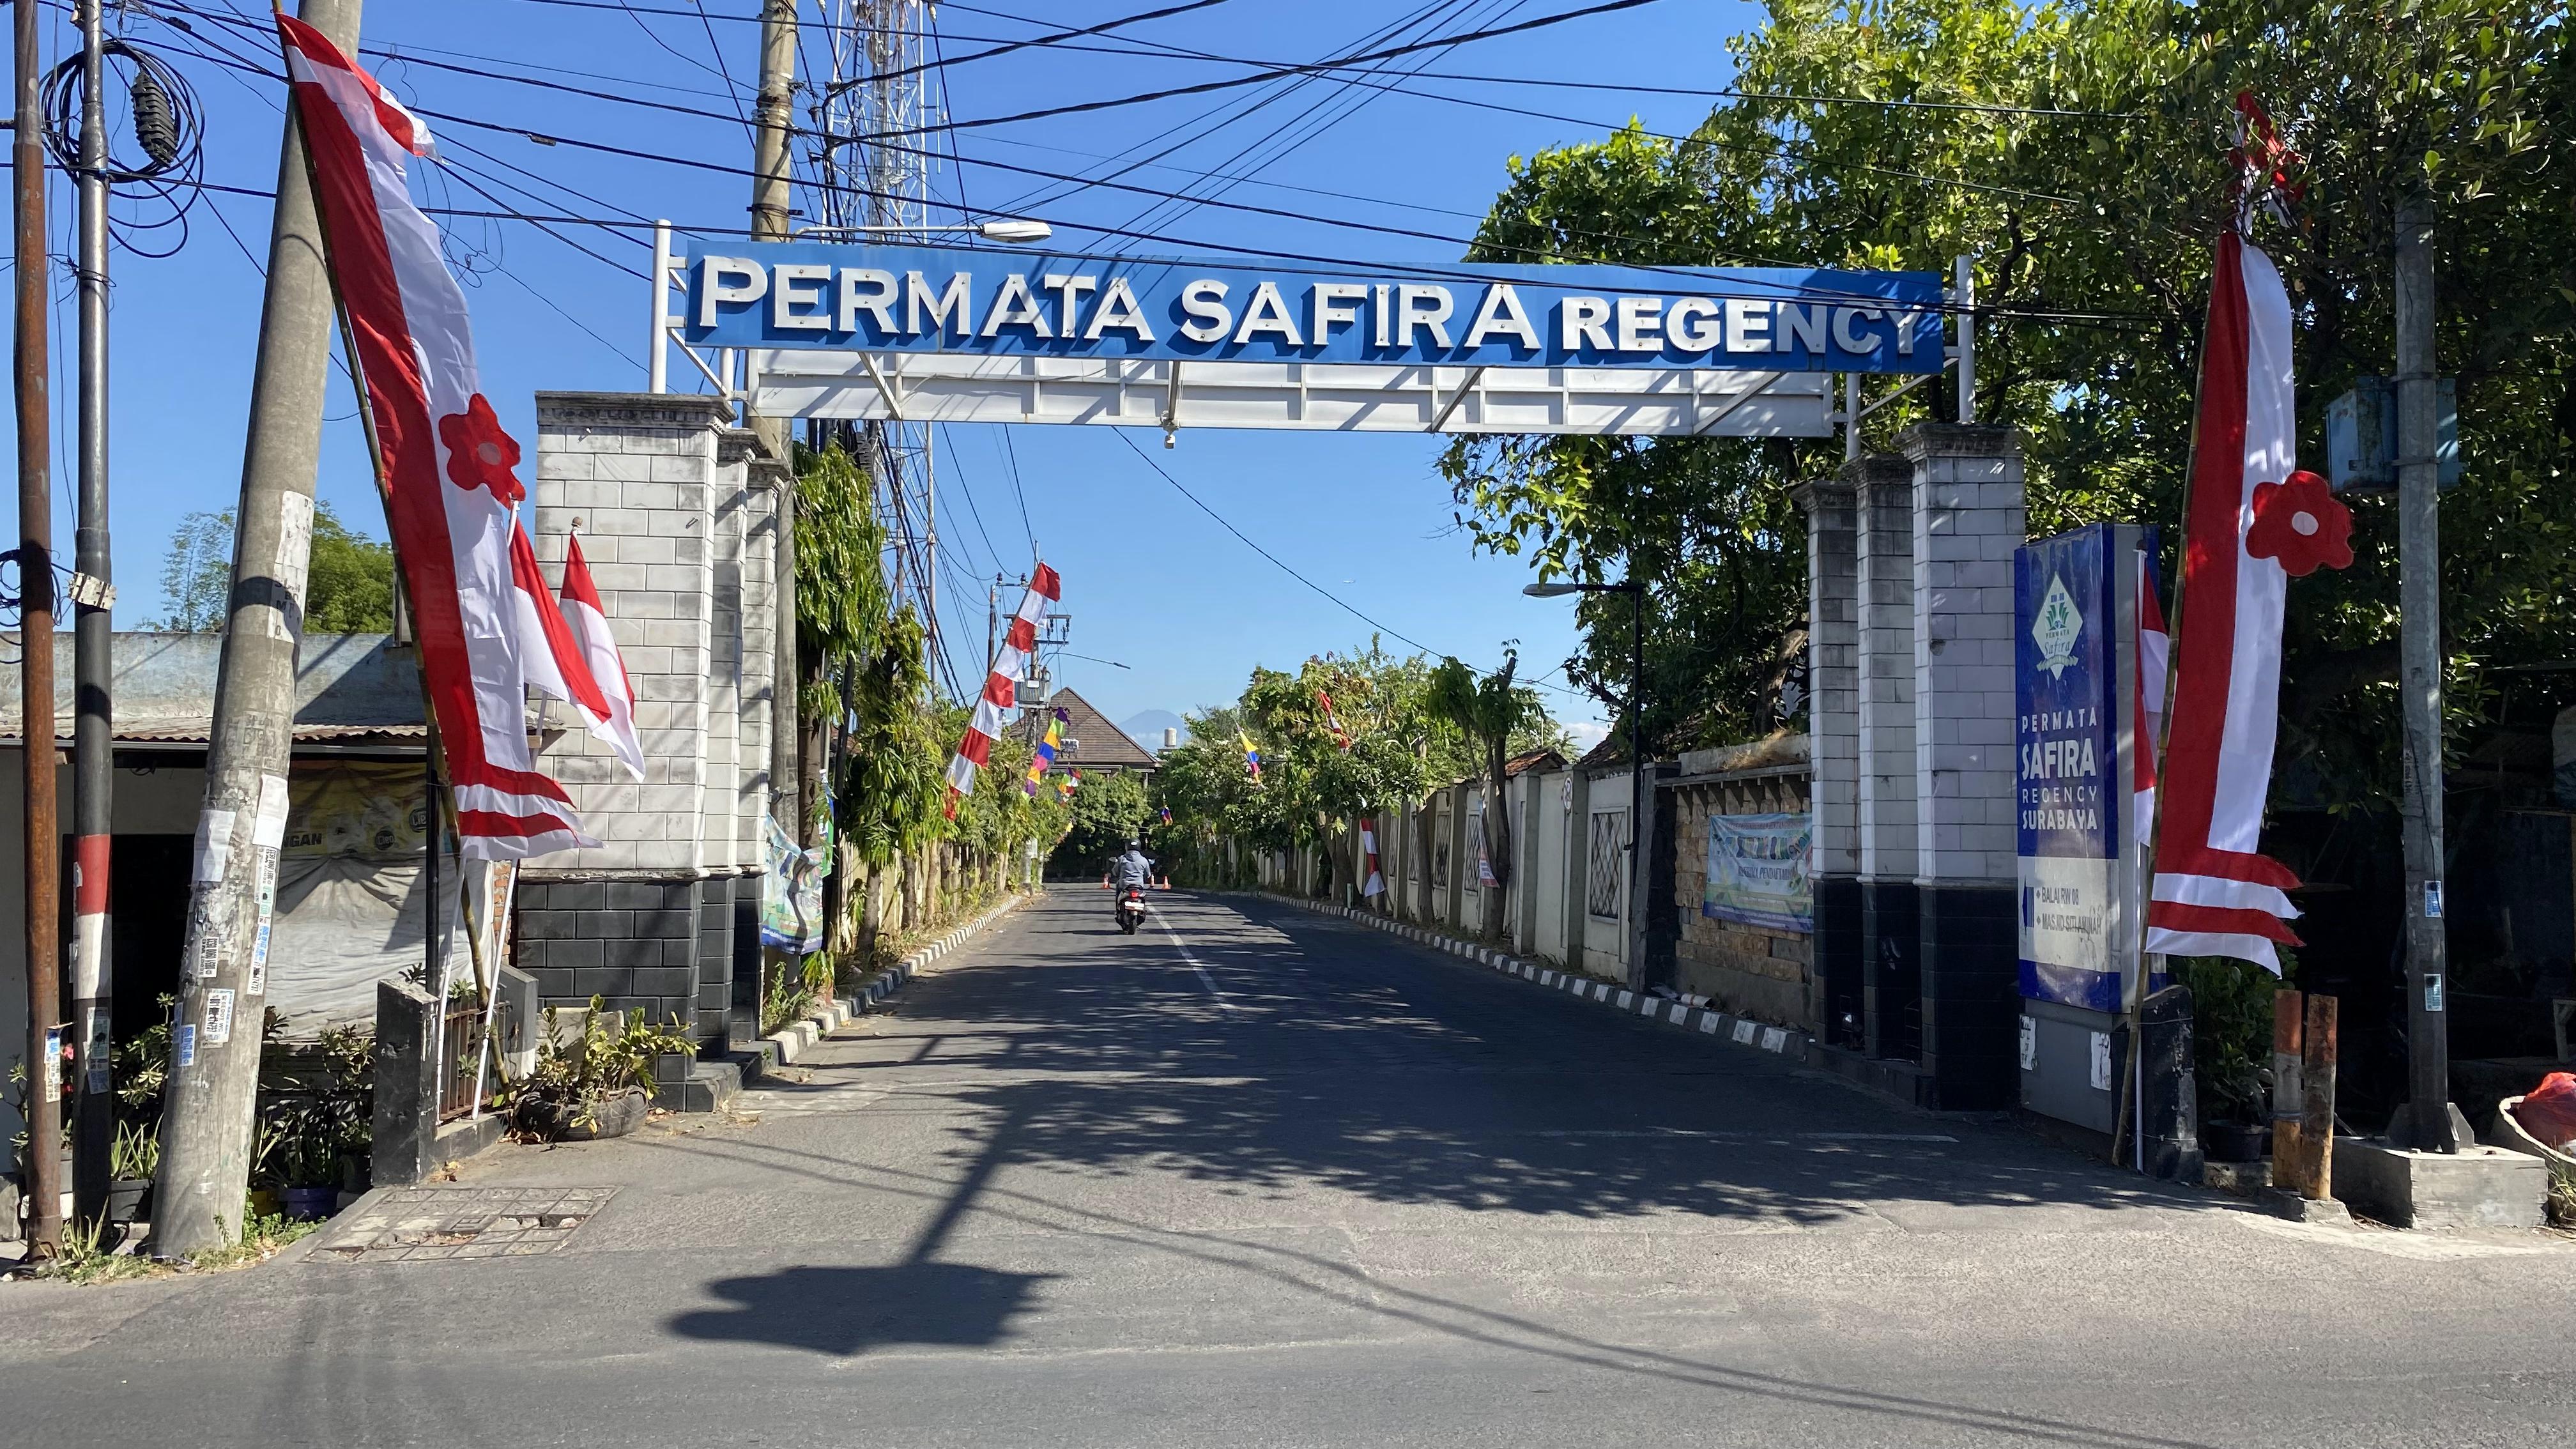 Permata Safira Regency